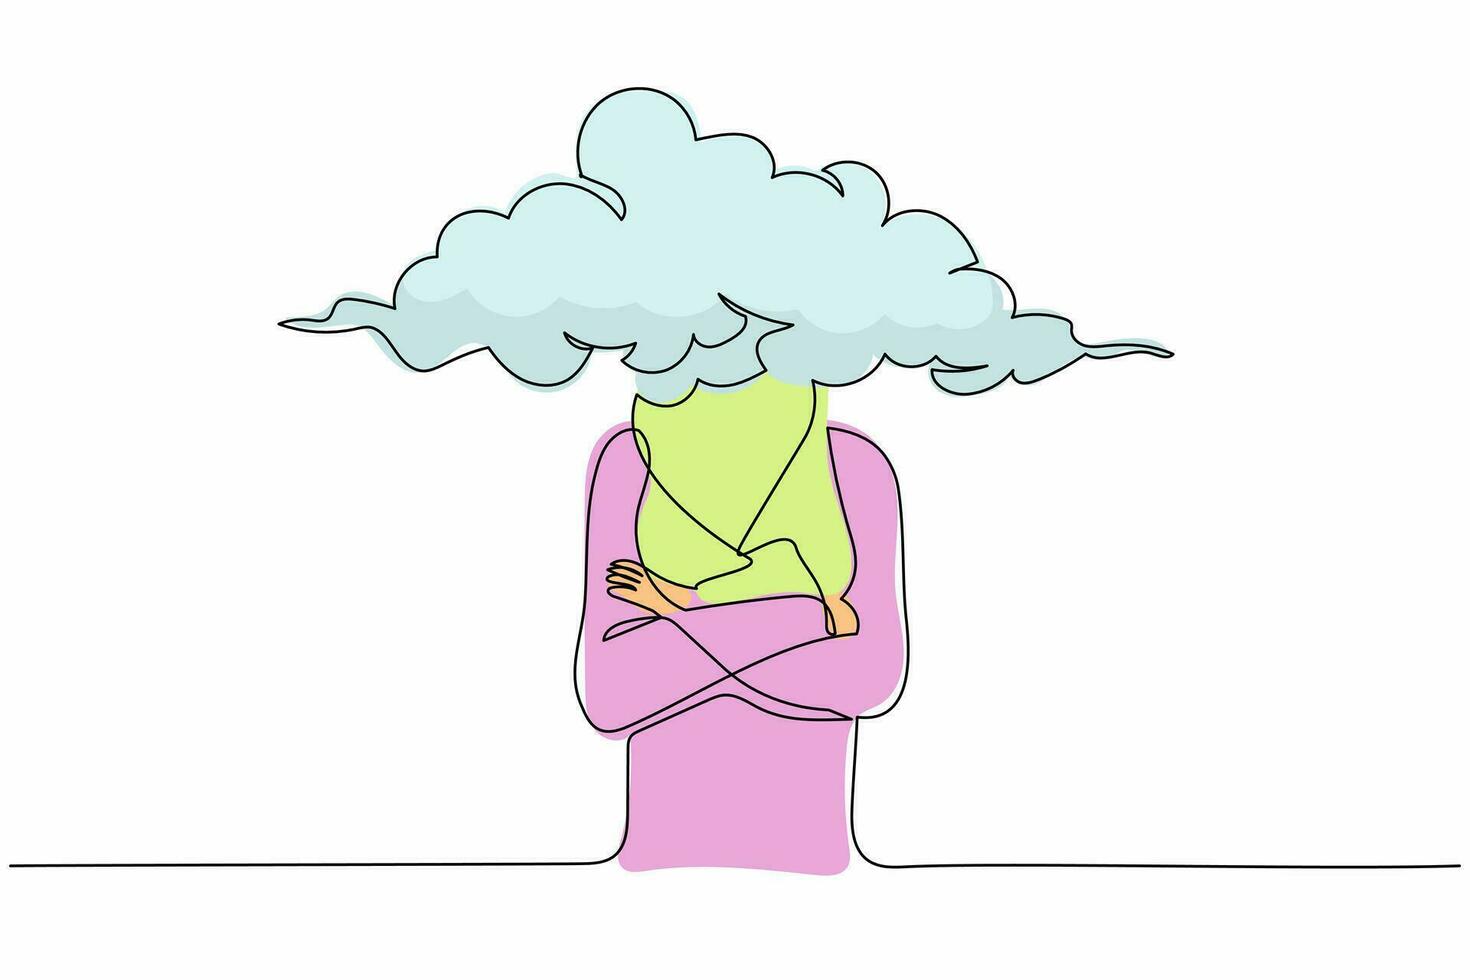 mujer de negocios árabe de cabeza de nube de dibujo de una sola línea. gerente femenina con cabeza vacía y nube en su lugar. distraído, soñando despierto, ausente. ilustración de vector gráfico de diseño de dibujo de línea continua moderna